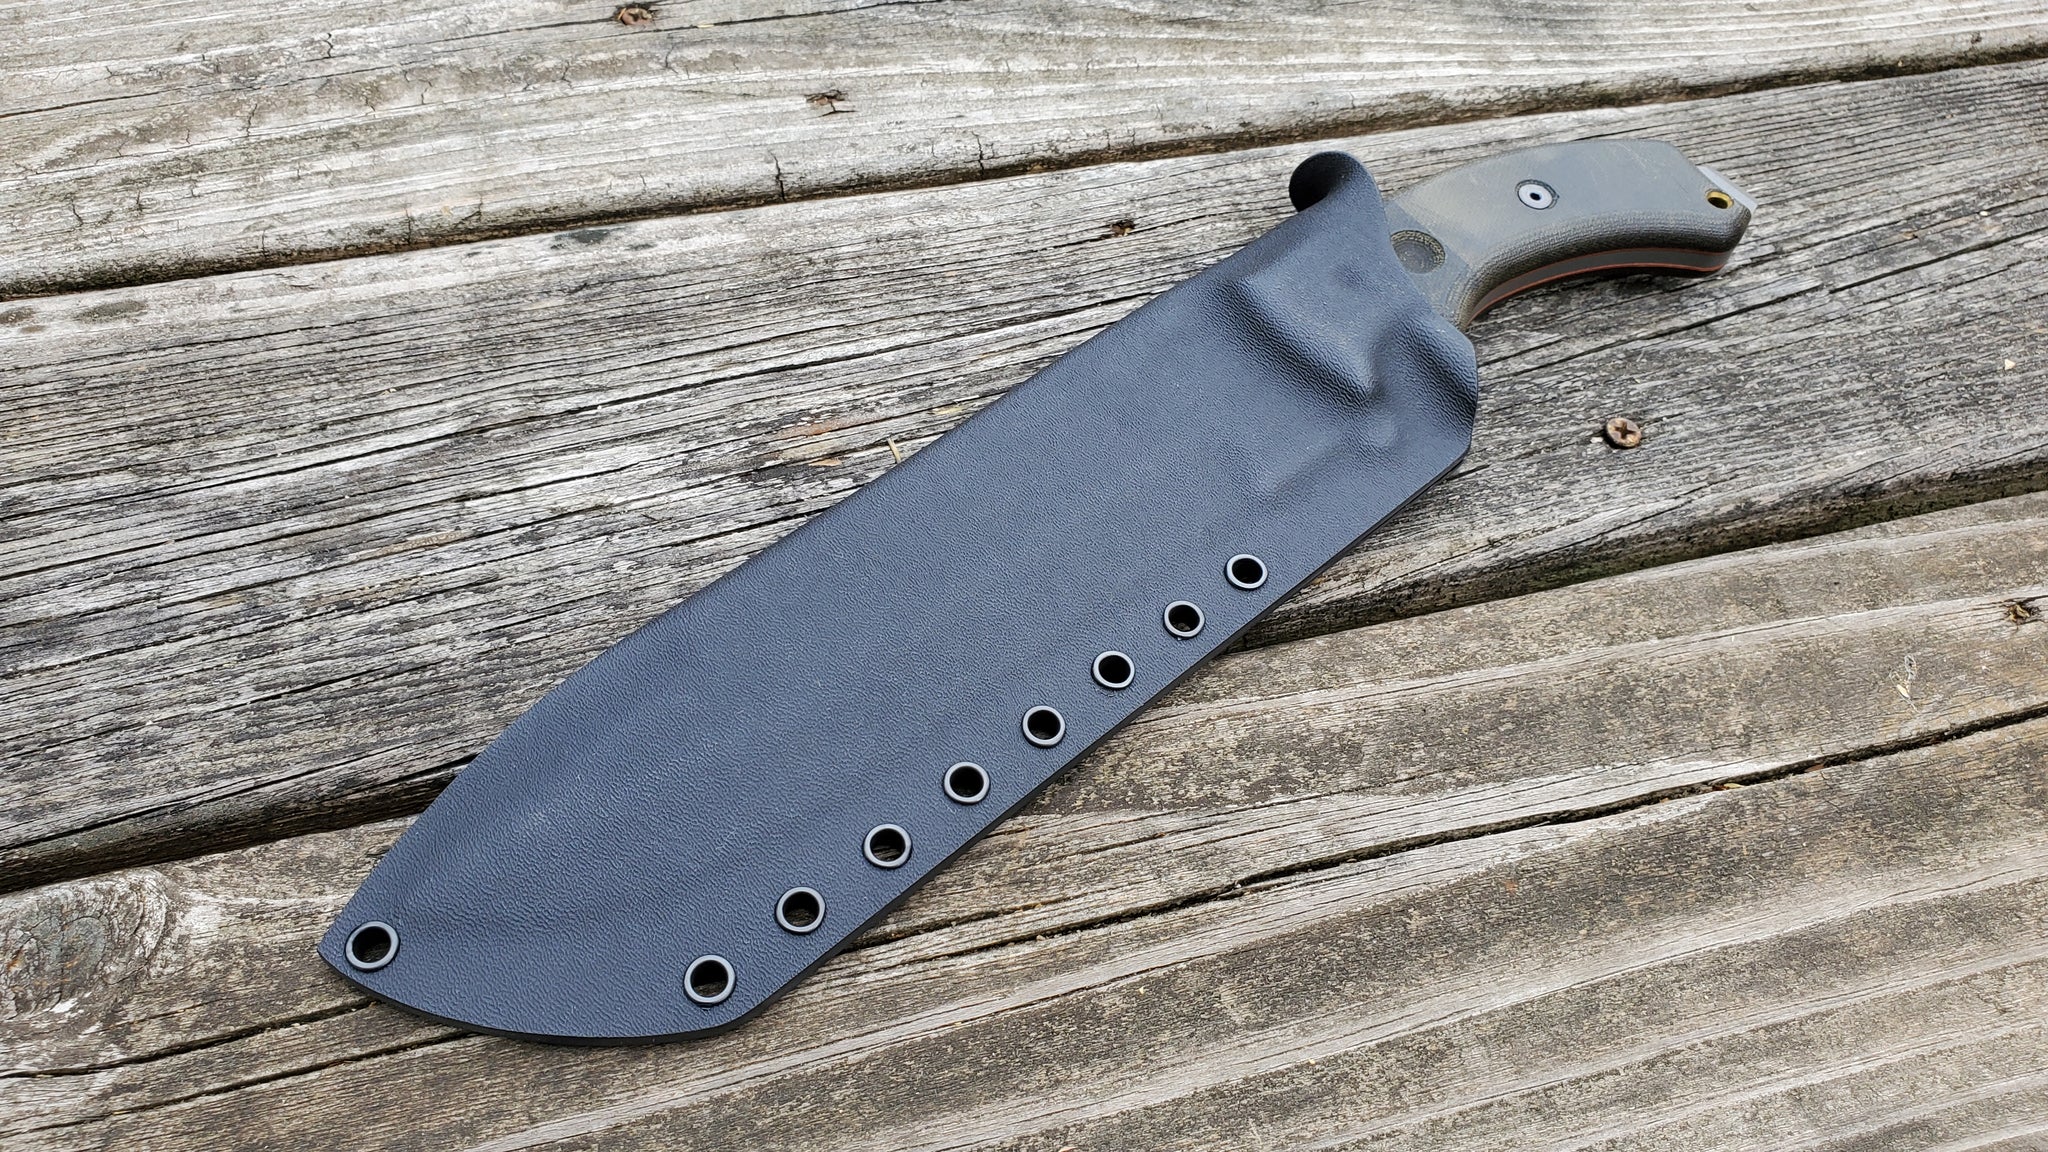 TOPS "TAHOMA FIELD KNIFE" custom TACO style kydex sheath